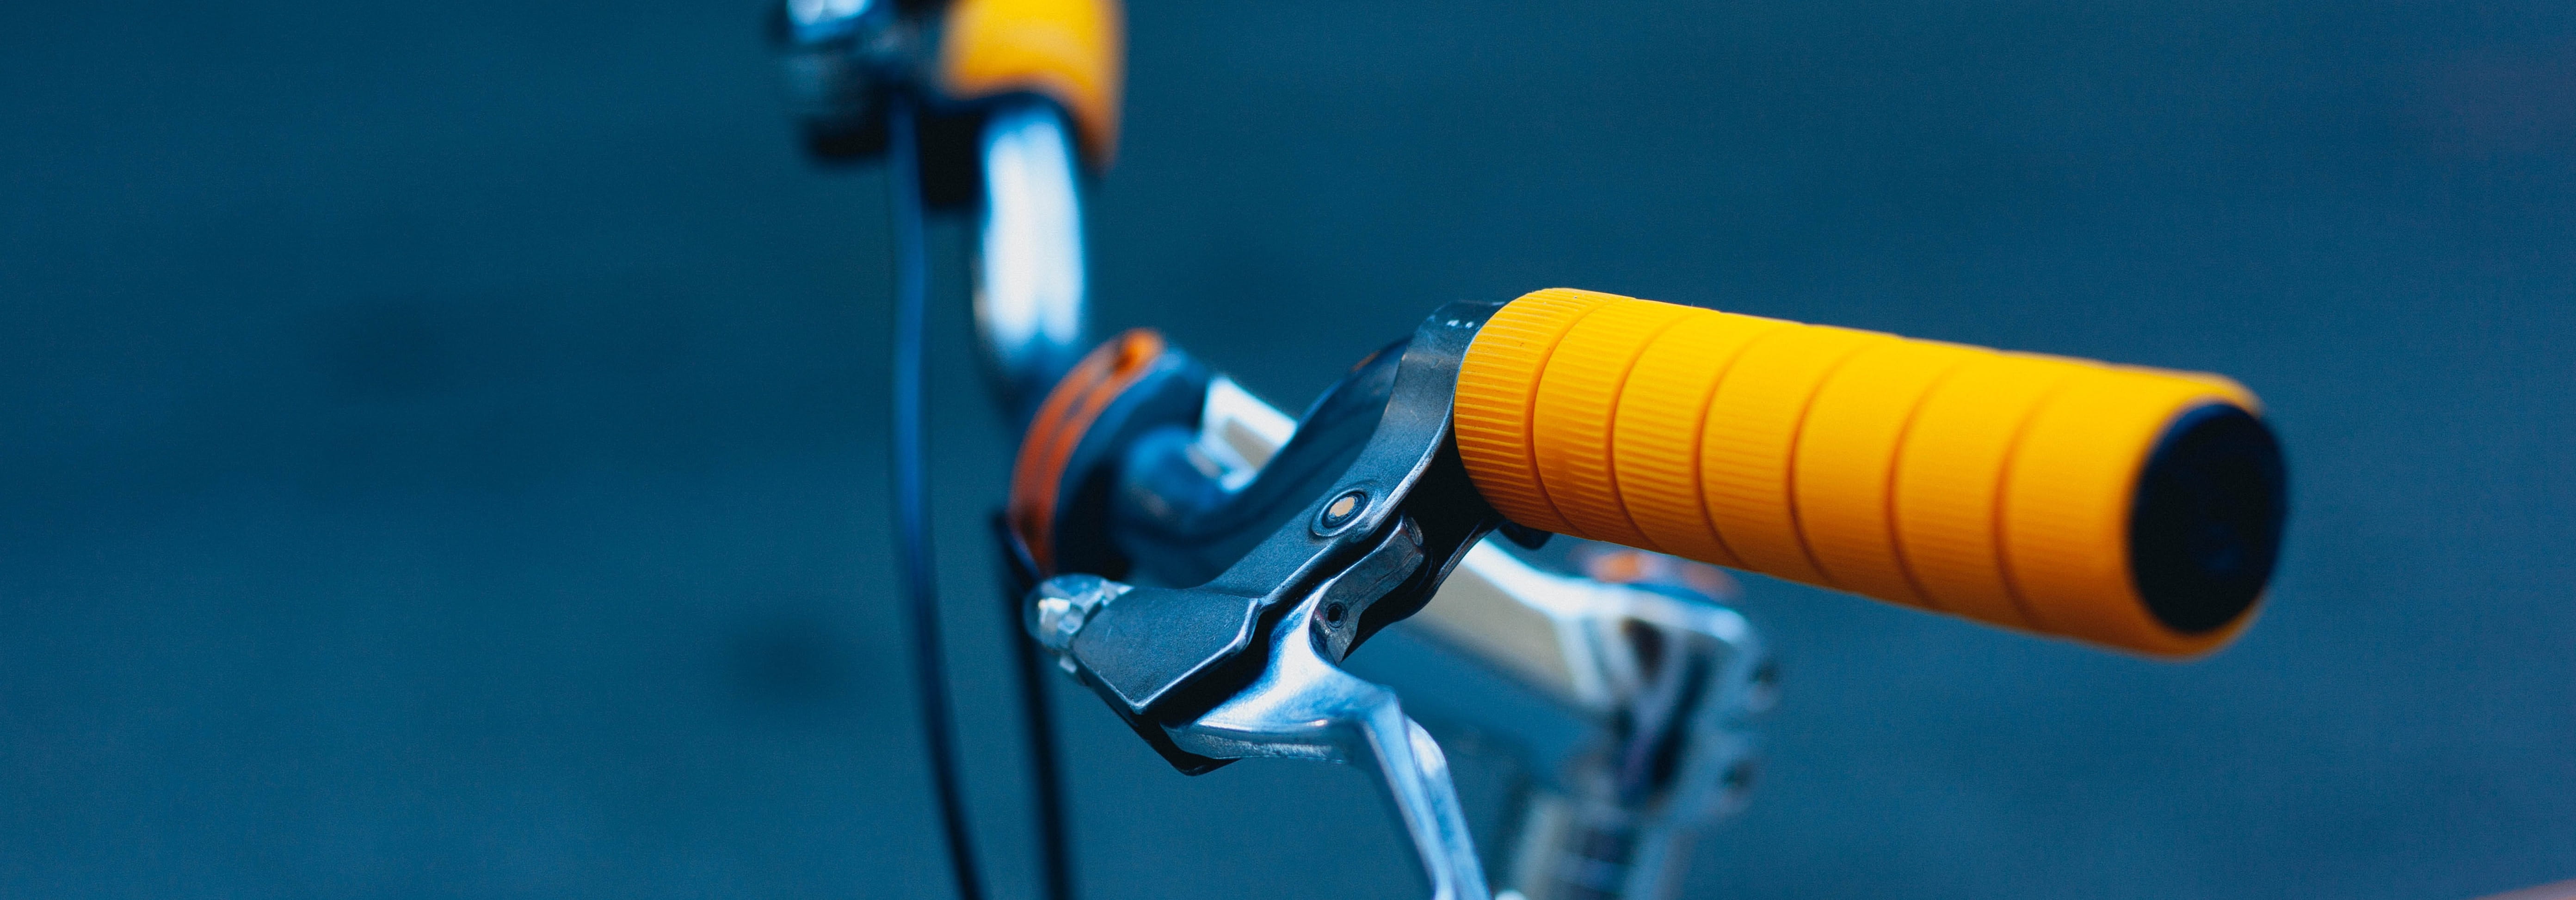 Fahrradlenker einstellen: So findest du eine schmerzfreie Sitzposition